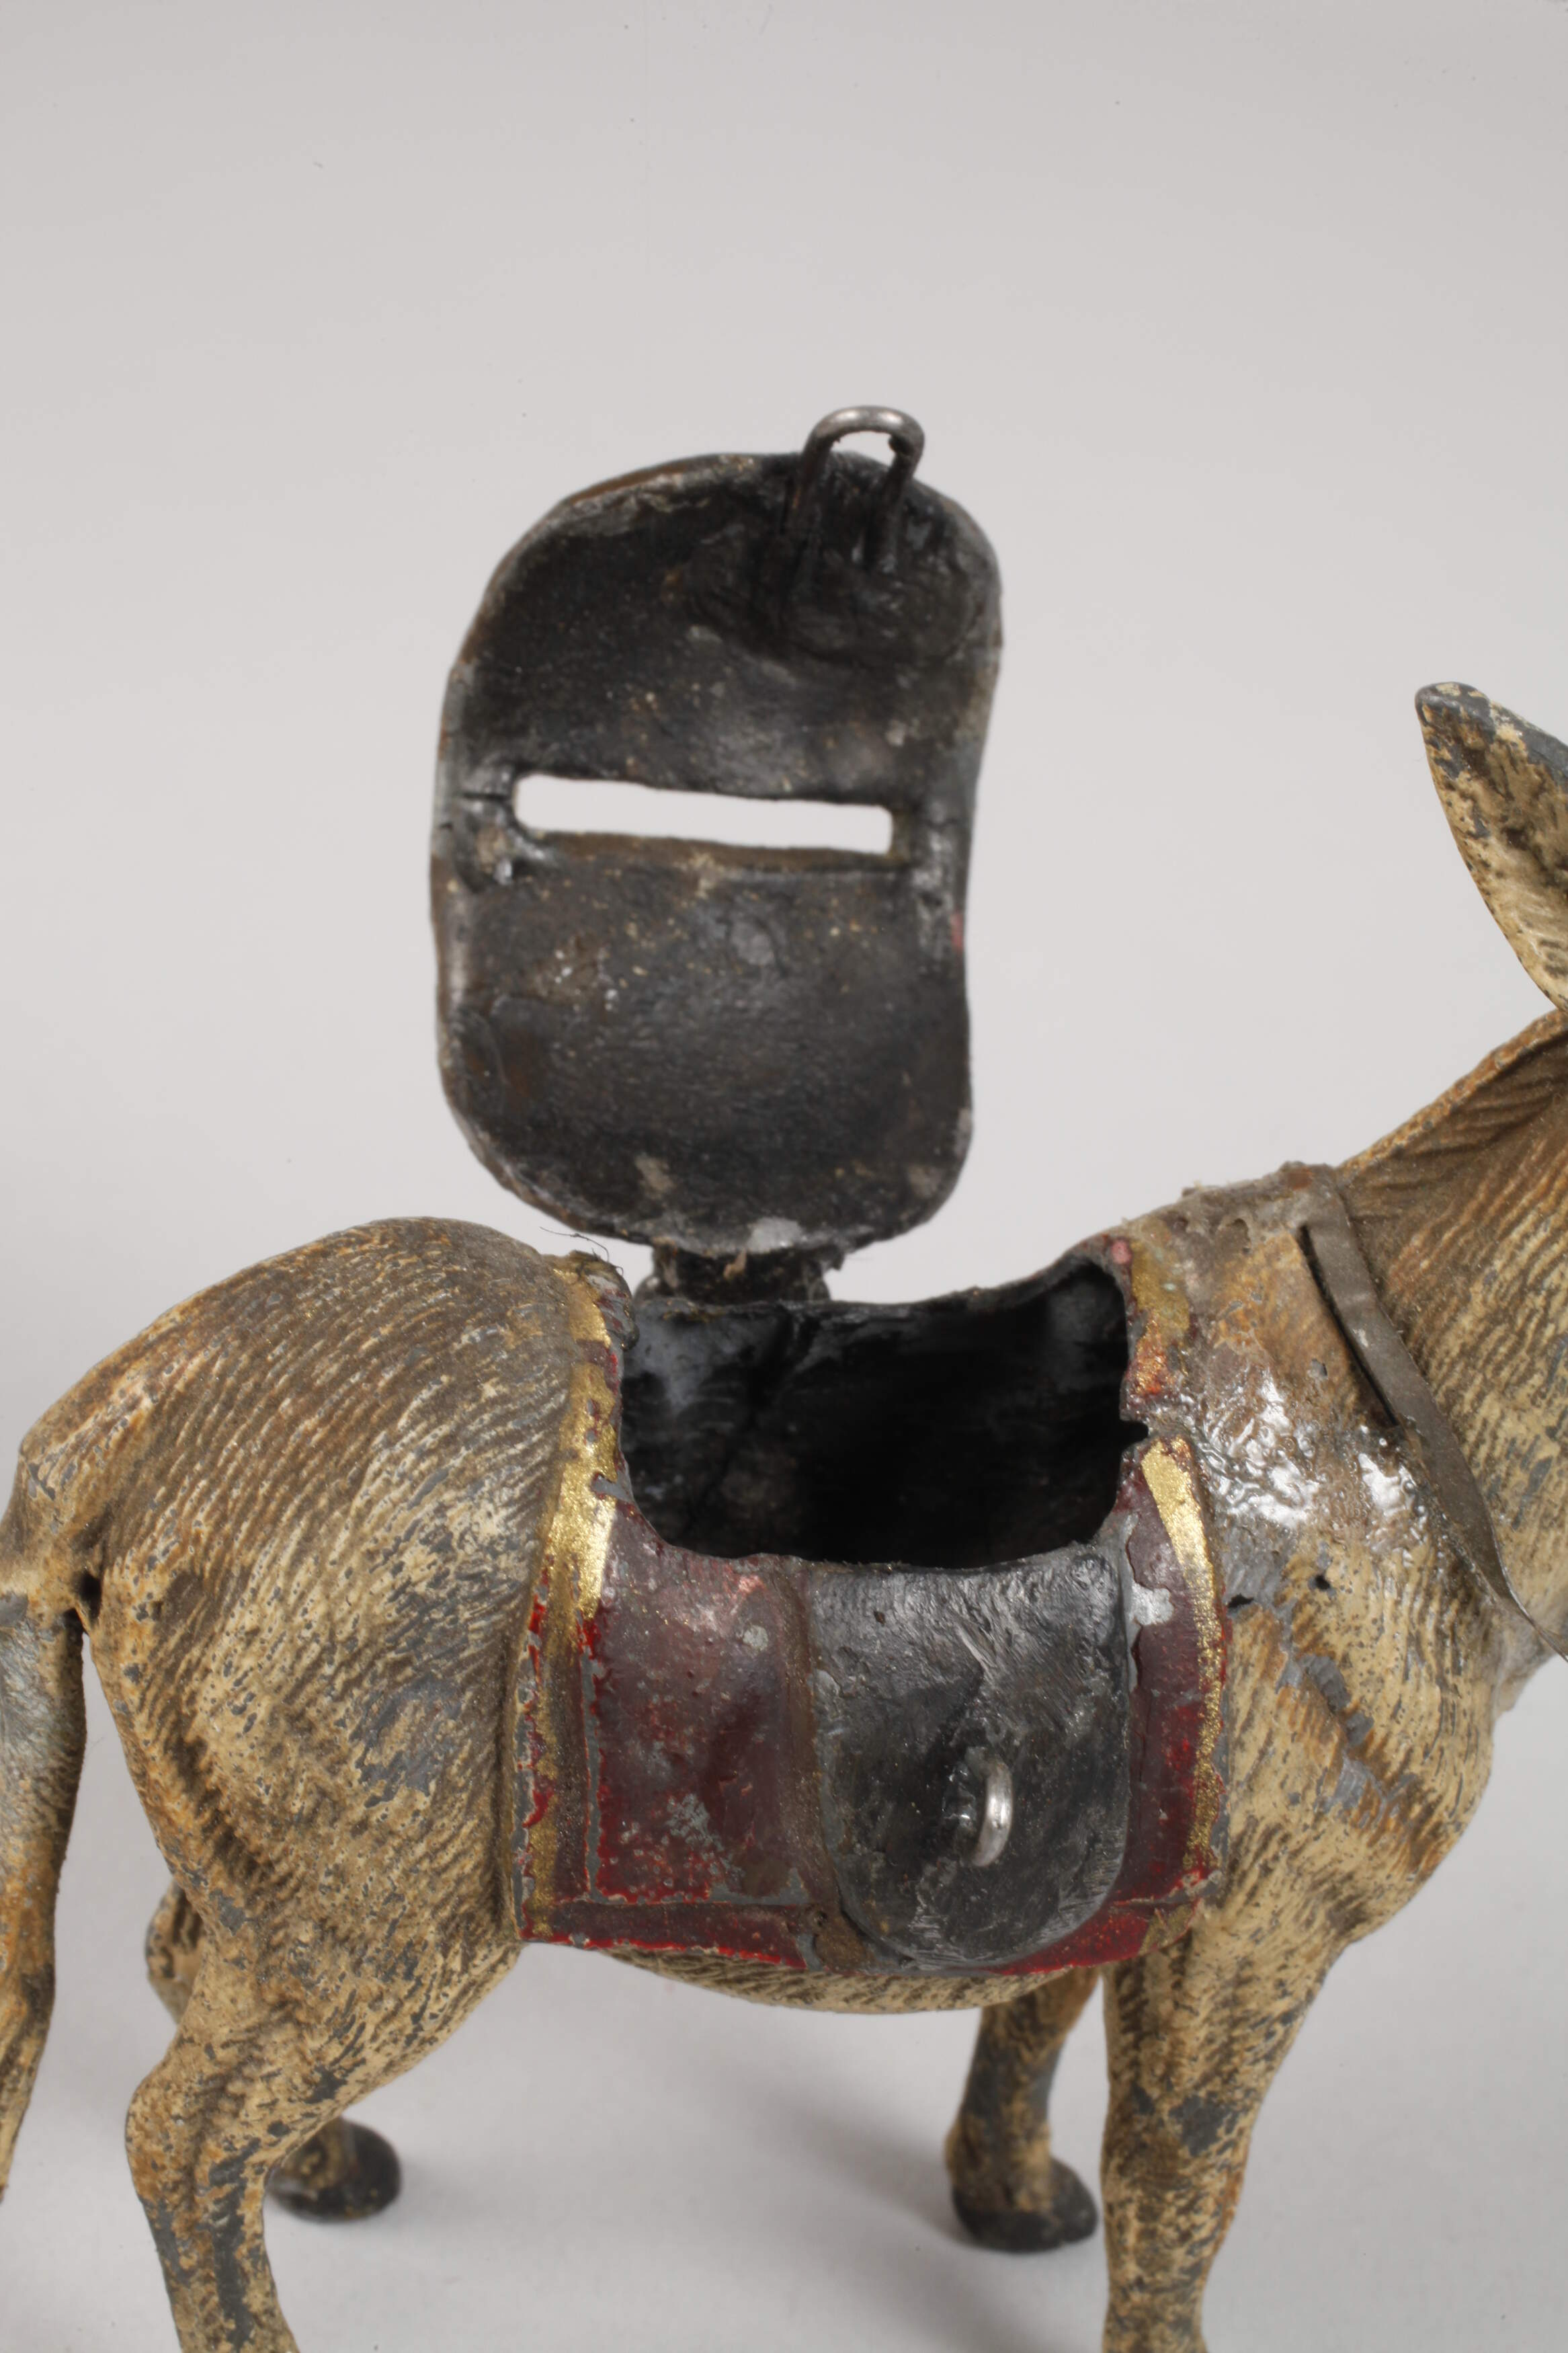 Money box as a donkey with saddle - Image 3 of 3